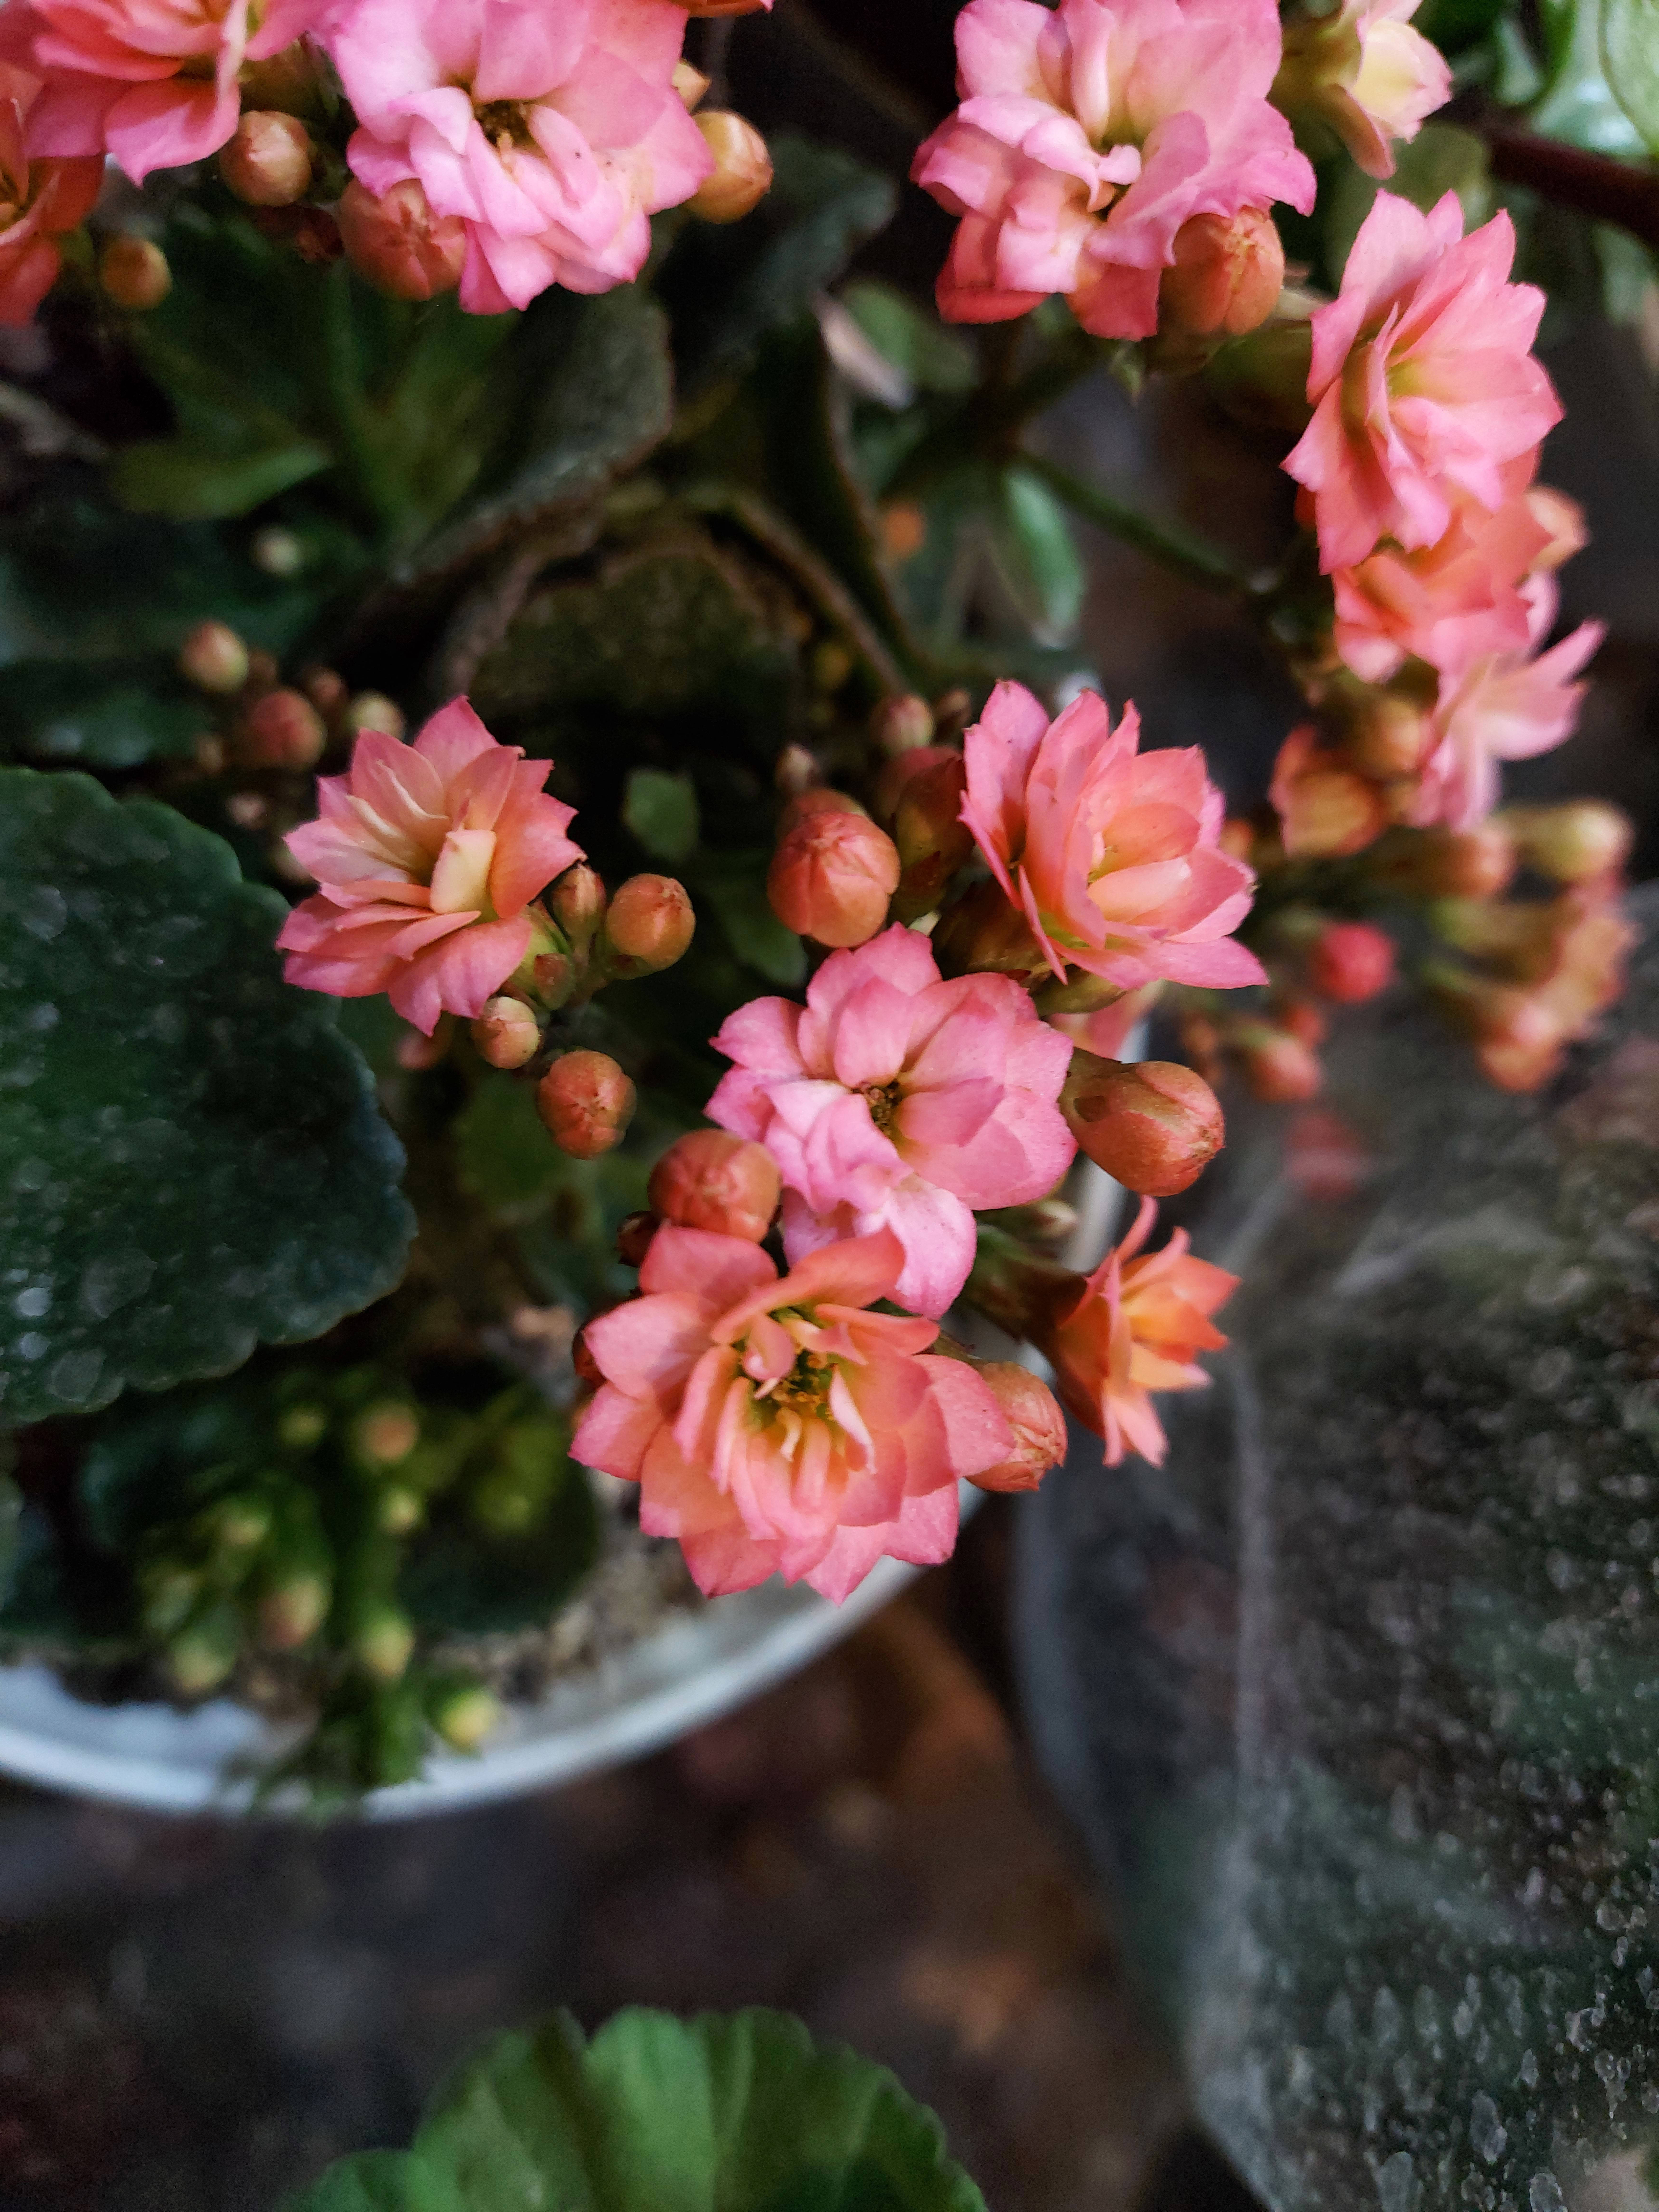 عکس نمونه دوربین واید گلکسی M51 سامسونگ در نور کم - گل های صورتی از نمای نزدیک